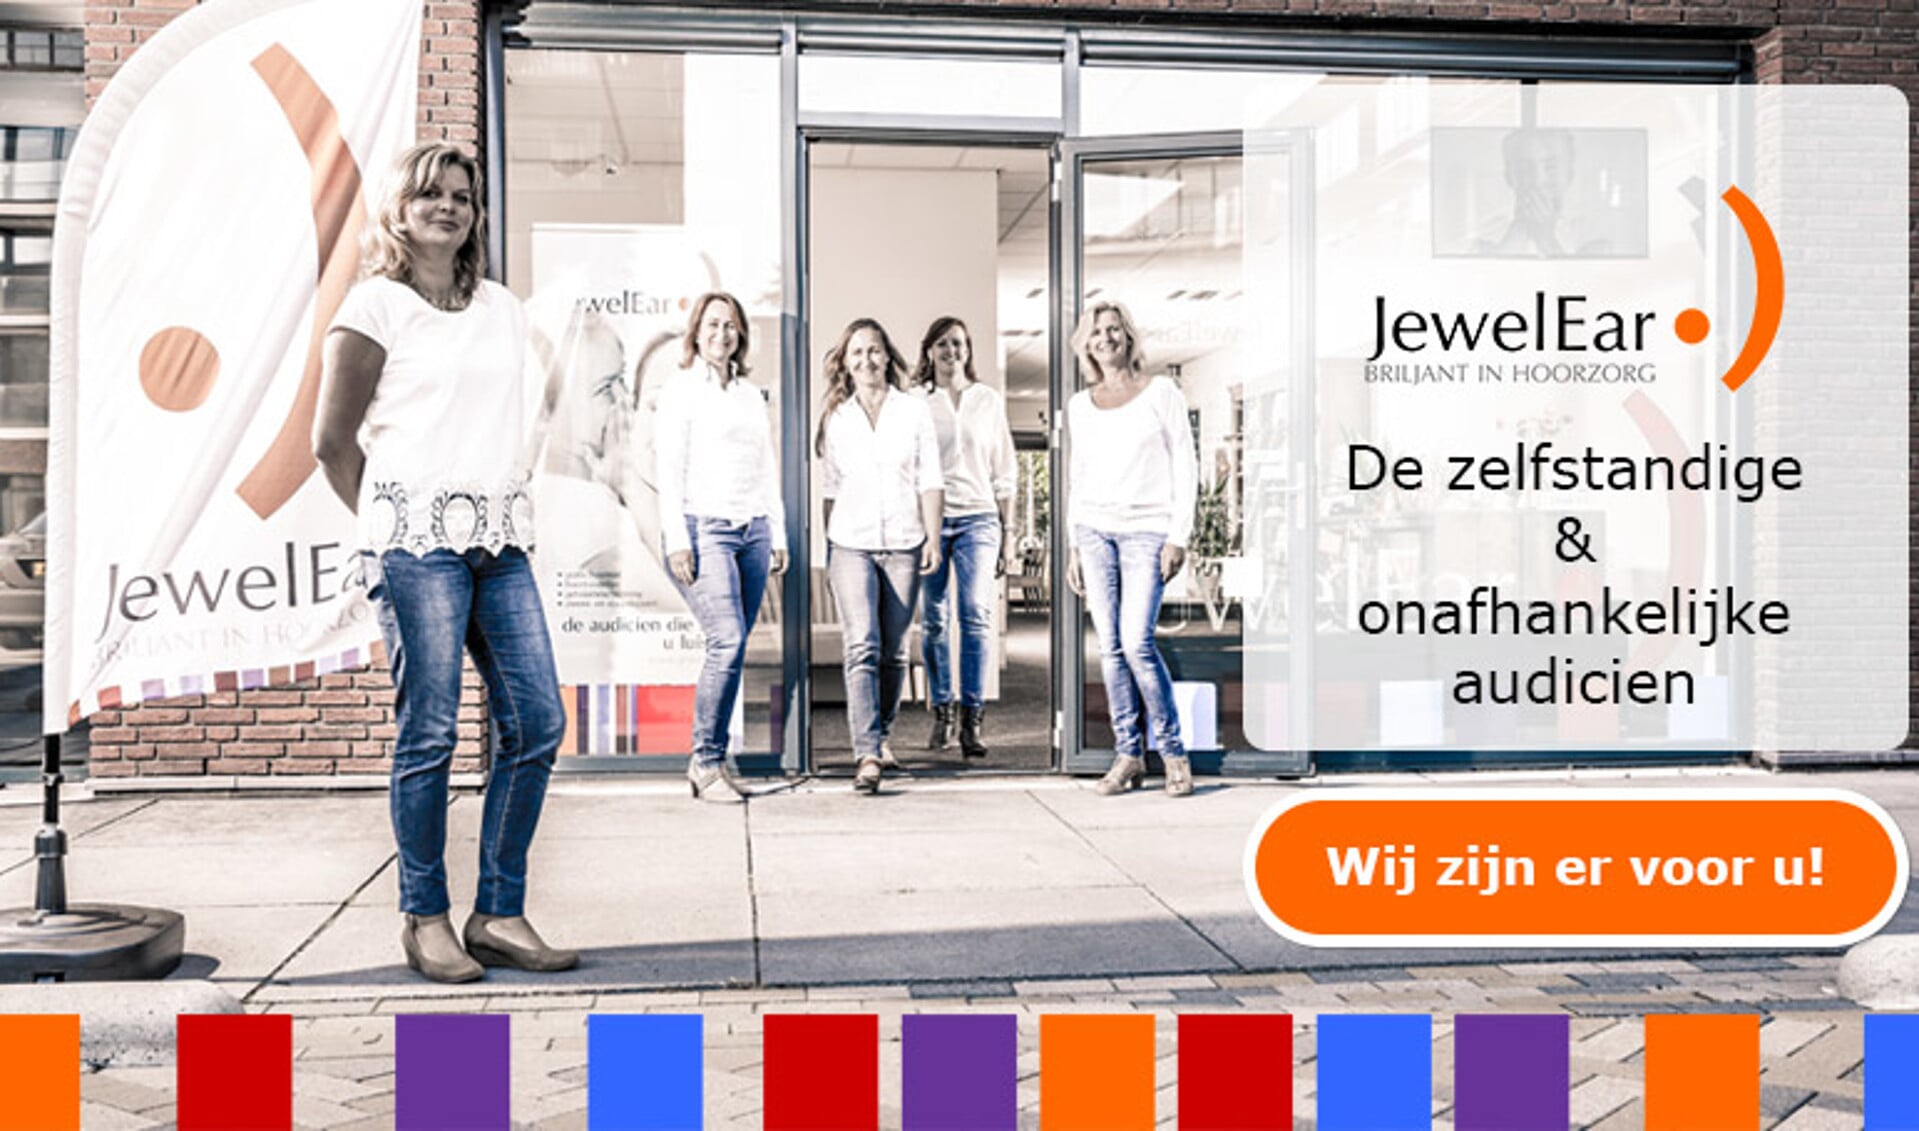 JewelEar organiseert dinsdag 5 juli een oorcollege in het Van der Valk Hotel in Nootdorp. 